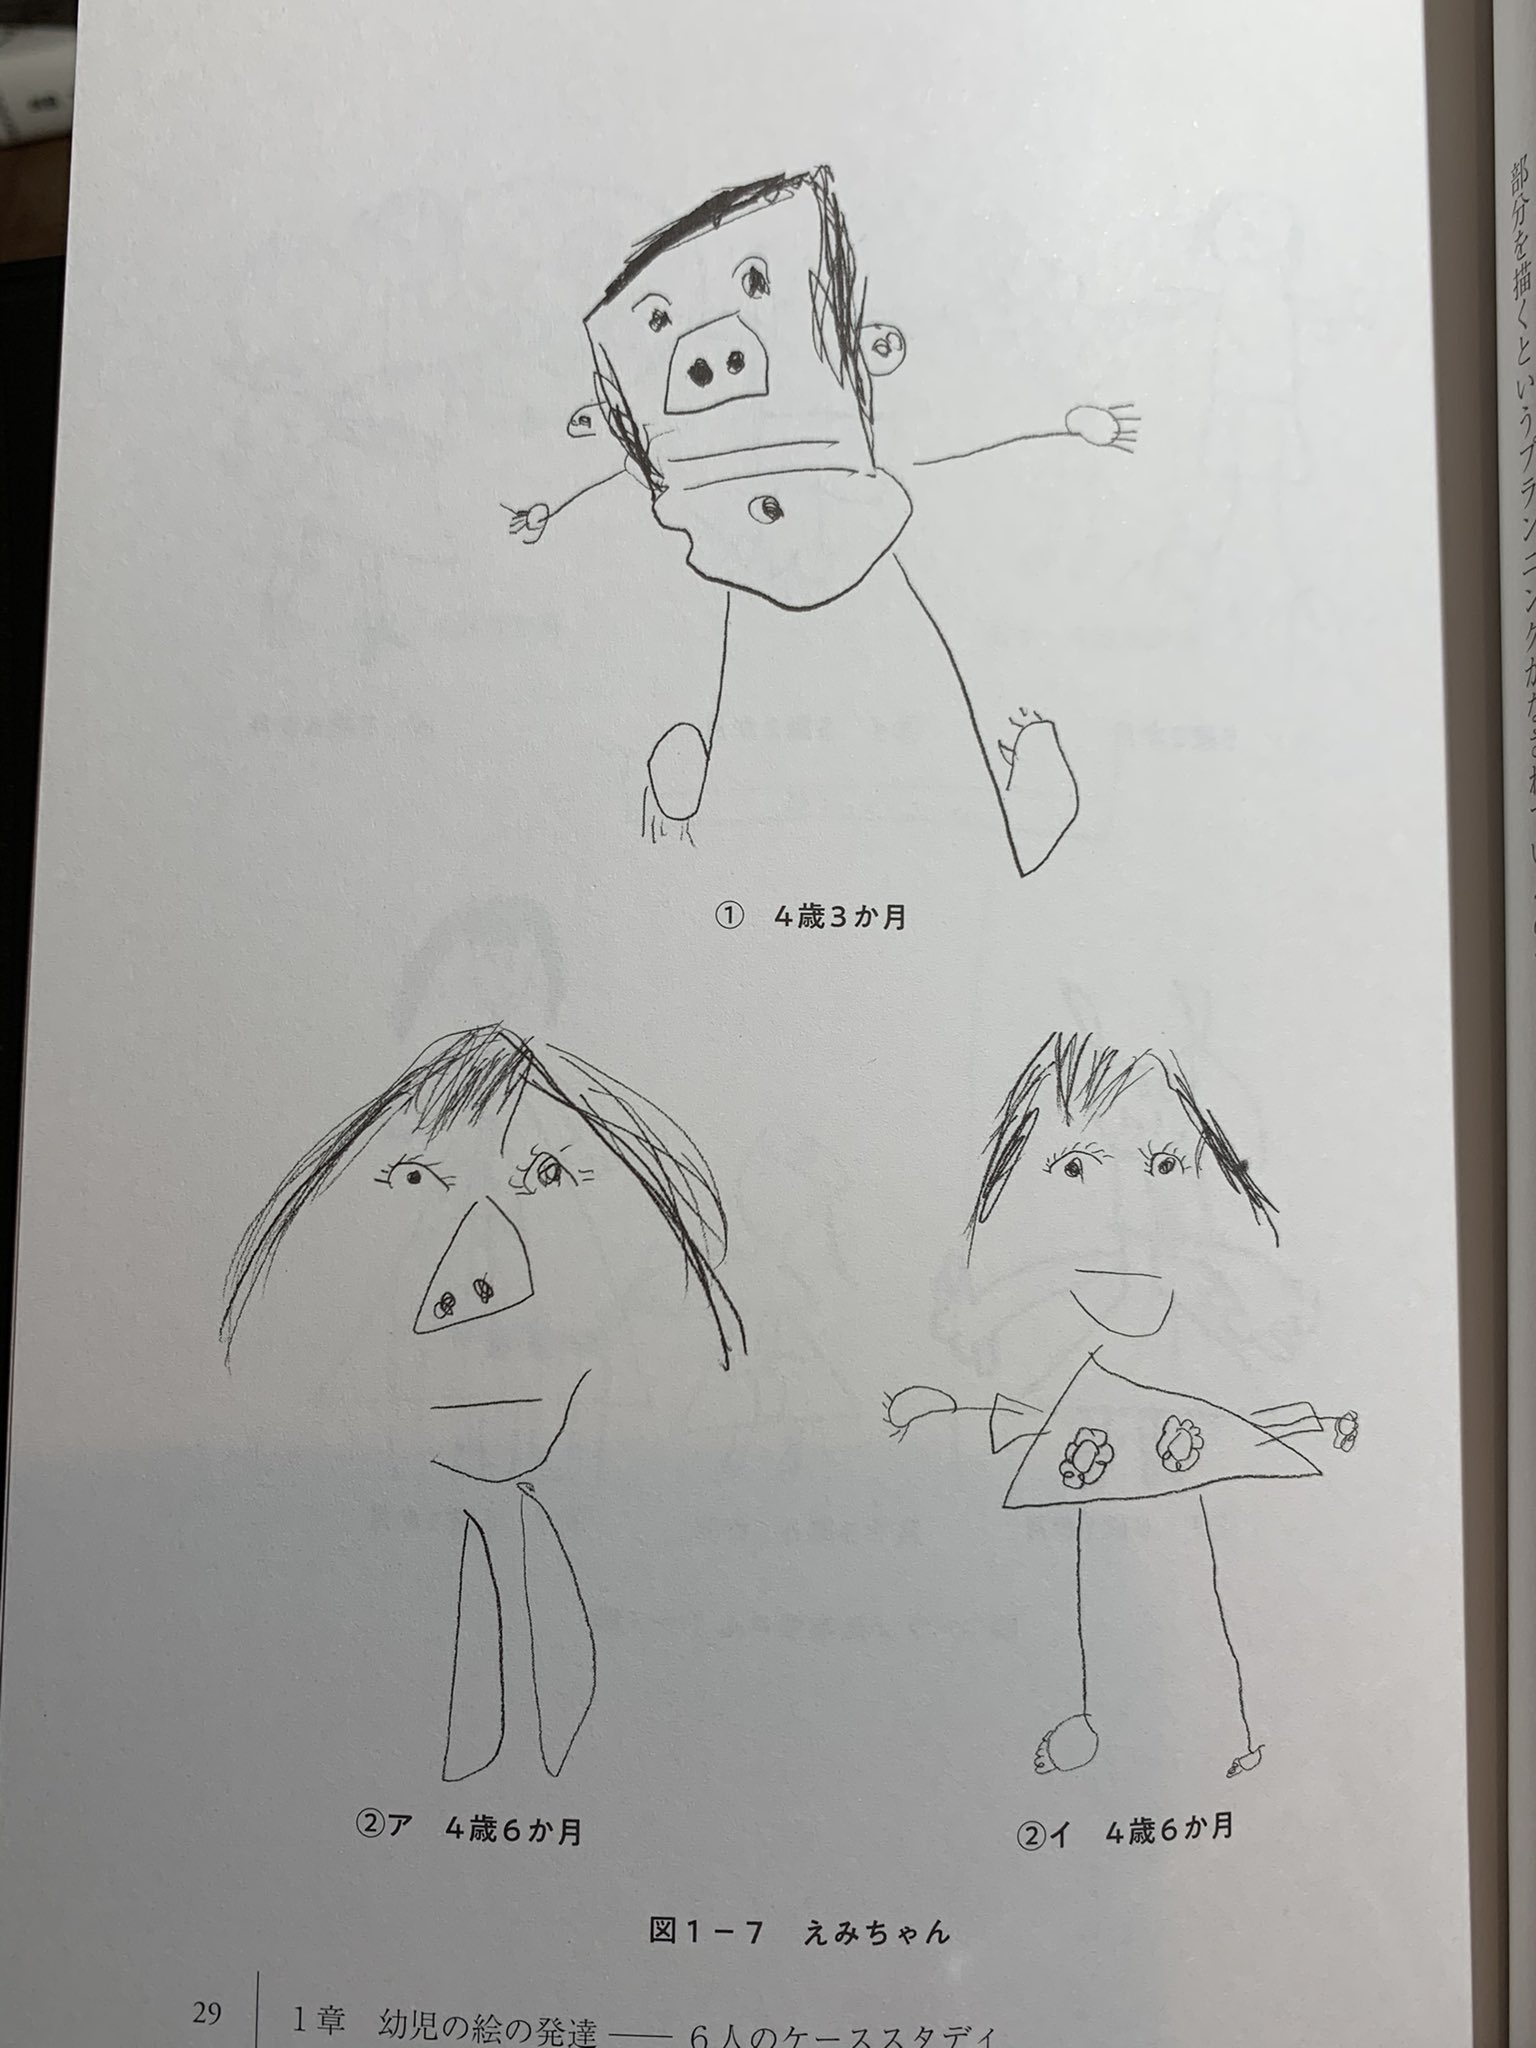 M Laboratory ３歳児にひし形を 模写 させると ３歳児は 多様な形を描くが 多くの場合 ギザギザが描かれる このギザギザは ひし形の とがった感じ を表現しているのではないかと考えられる じっさい 絵は 触覚や音や匂い 運動感覚をもとに